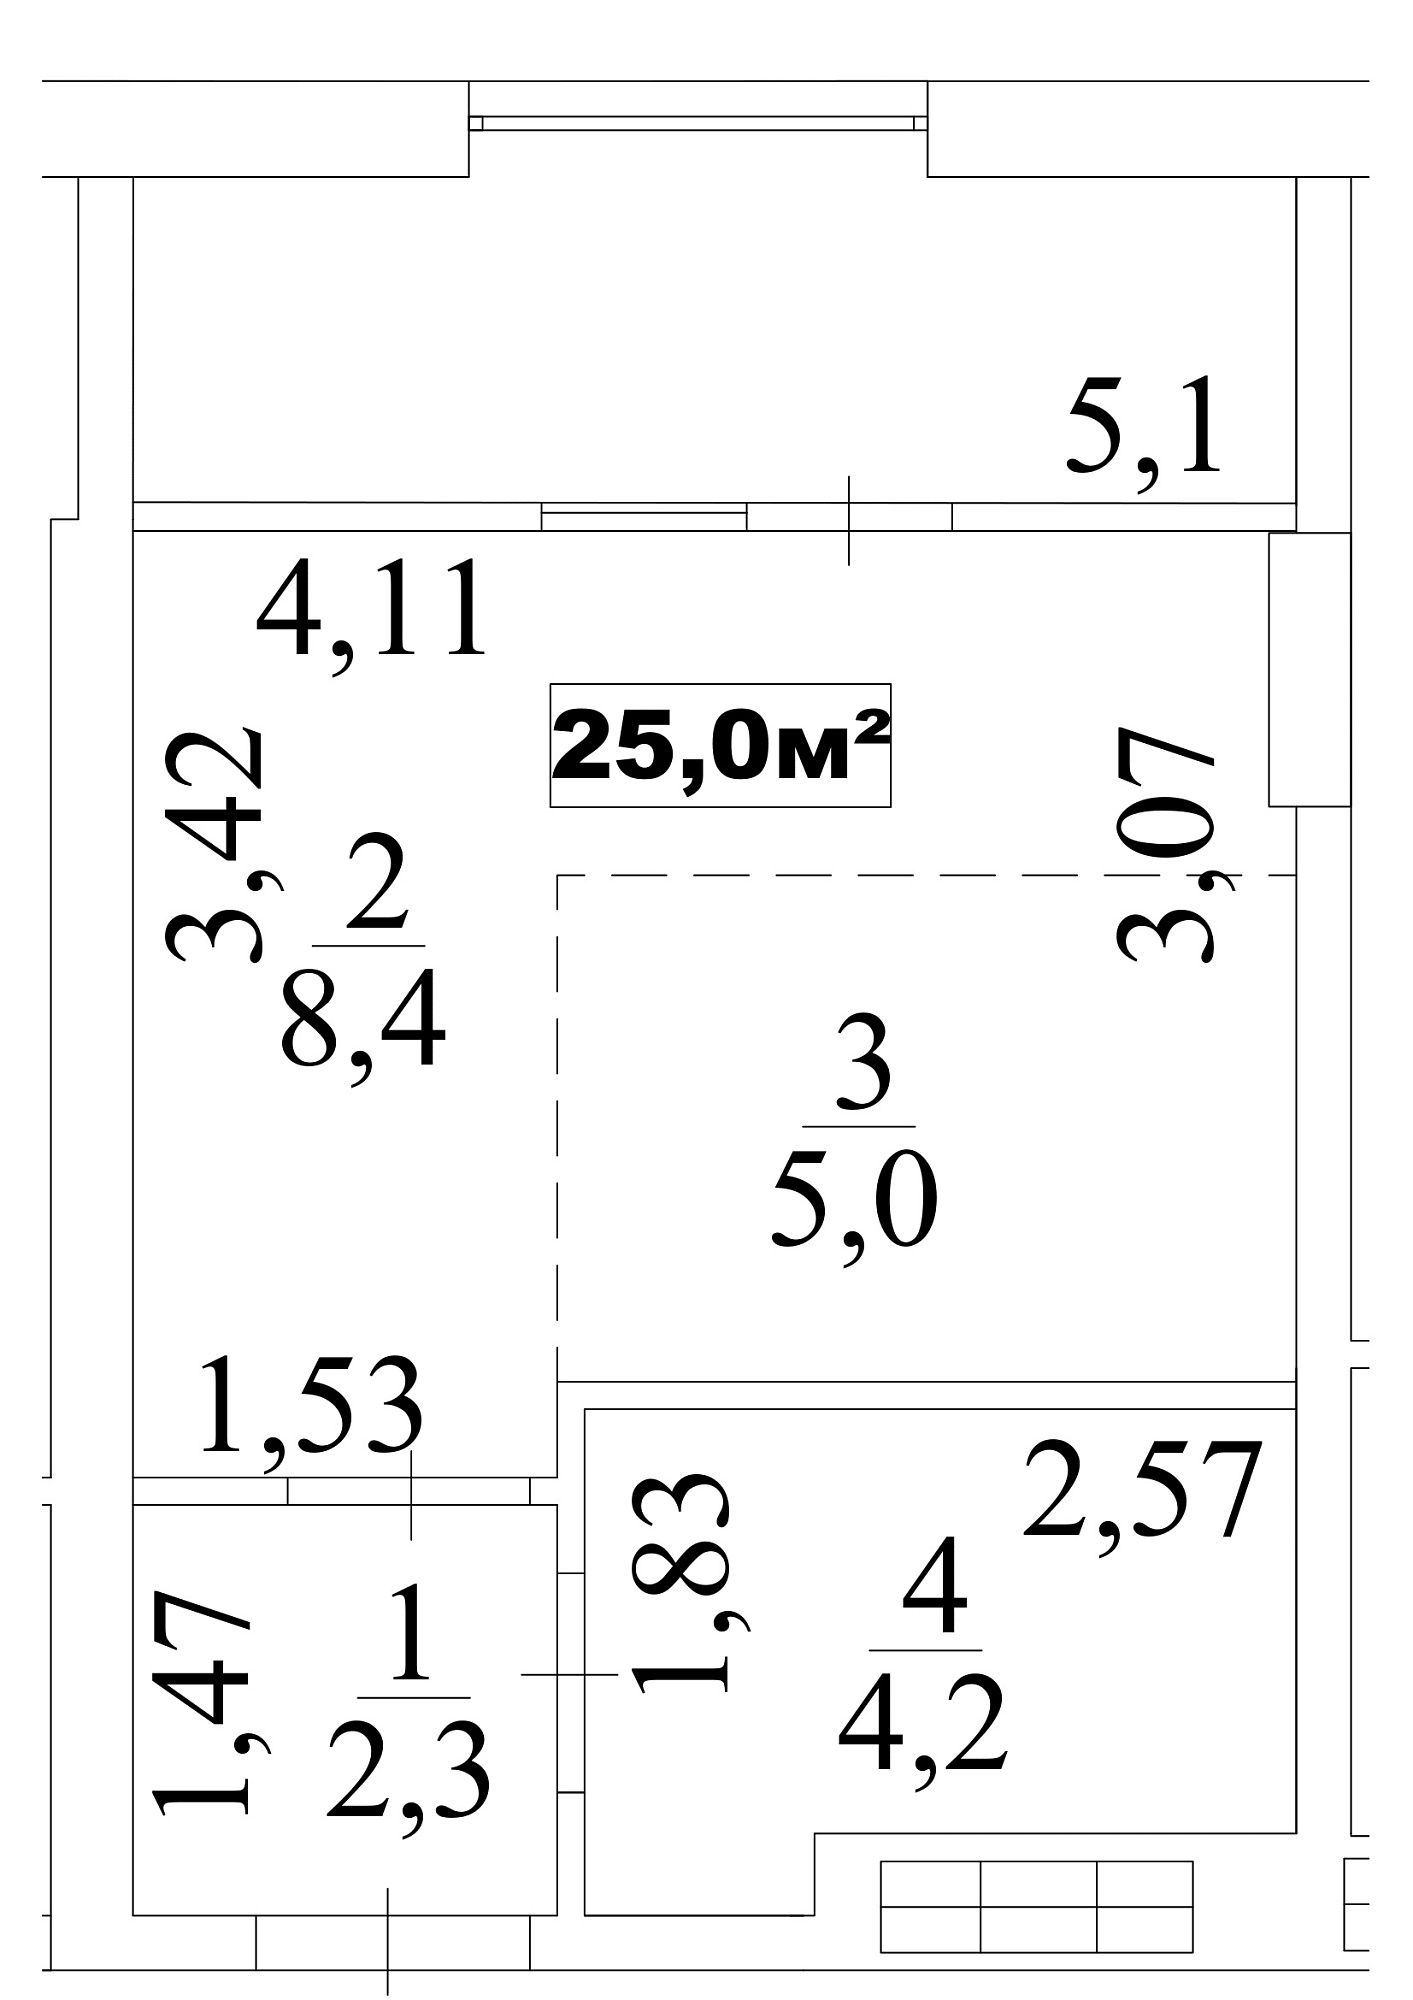 Планування Smart-квартира площею 25м2, AB-10-05/0039в.